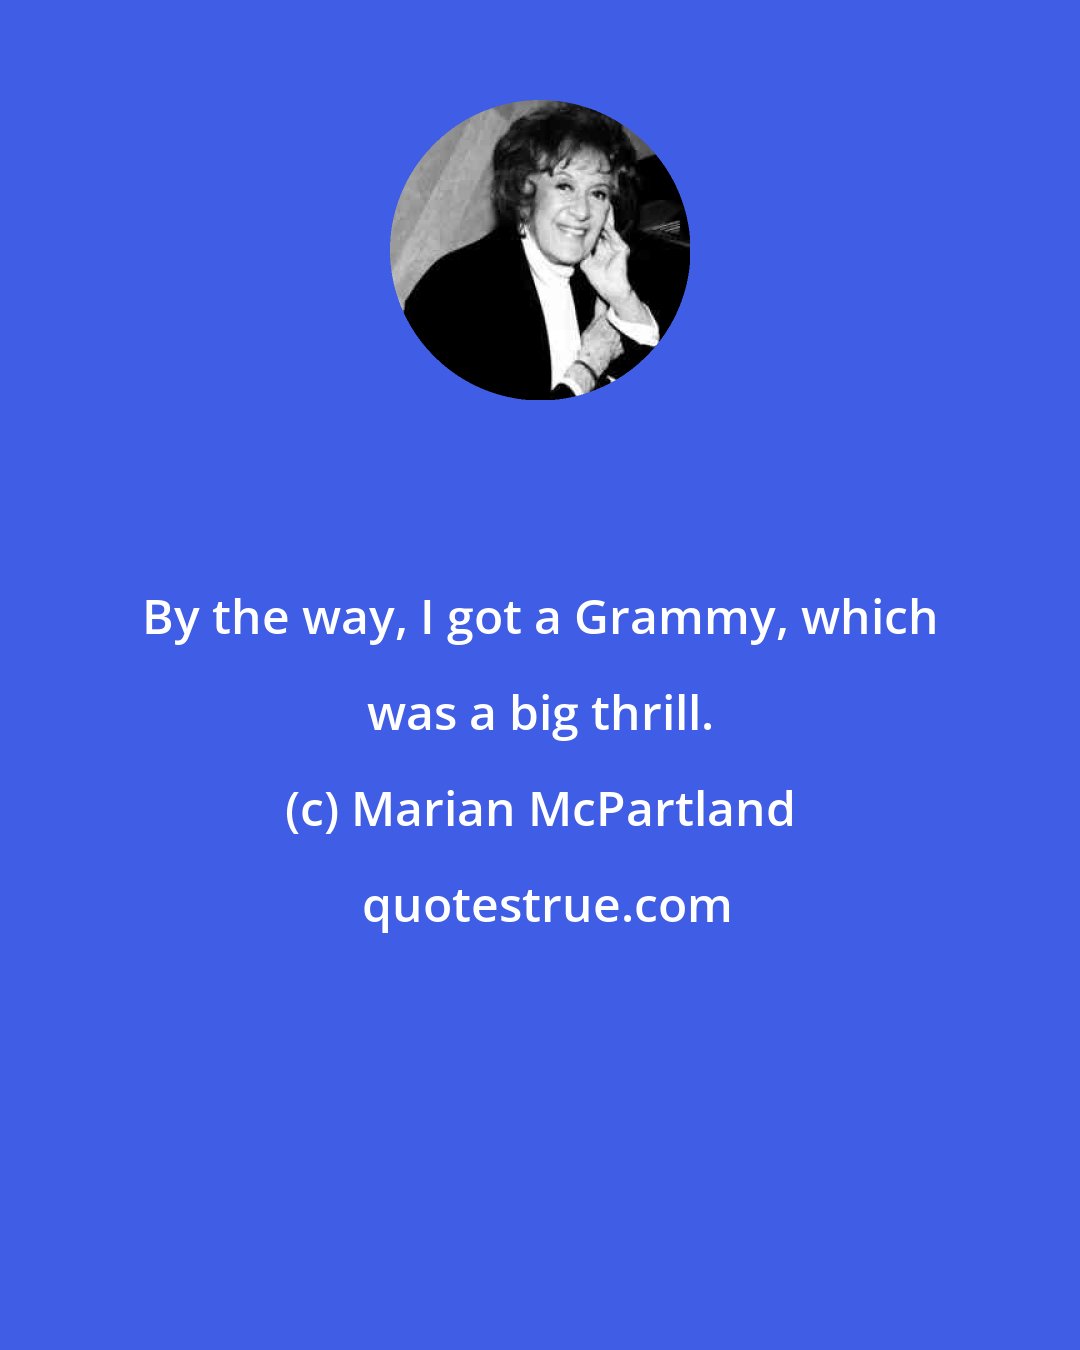 Marian McPartland: By the way, I got a Grammy, which was a big thrill.